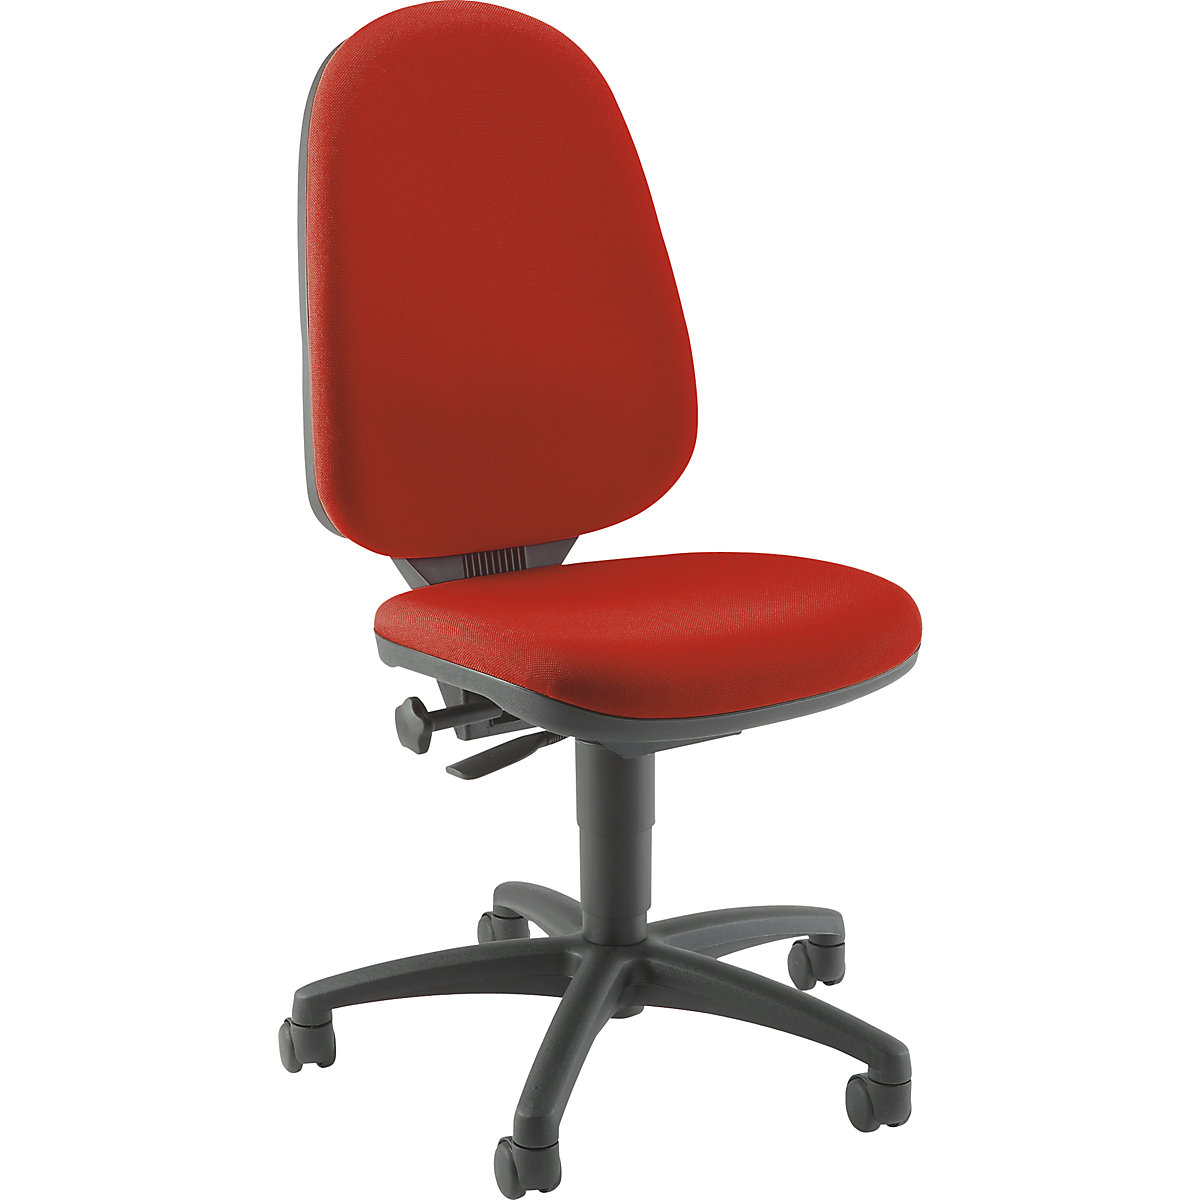 Standard swivel chair - Topstar